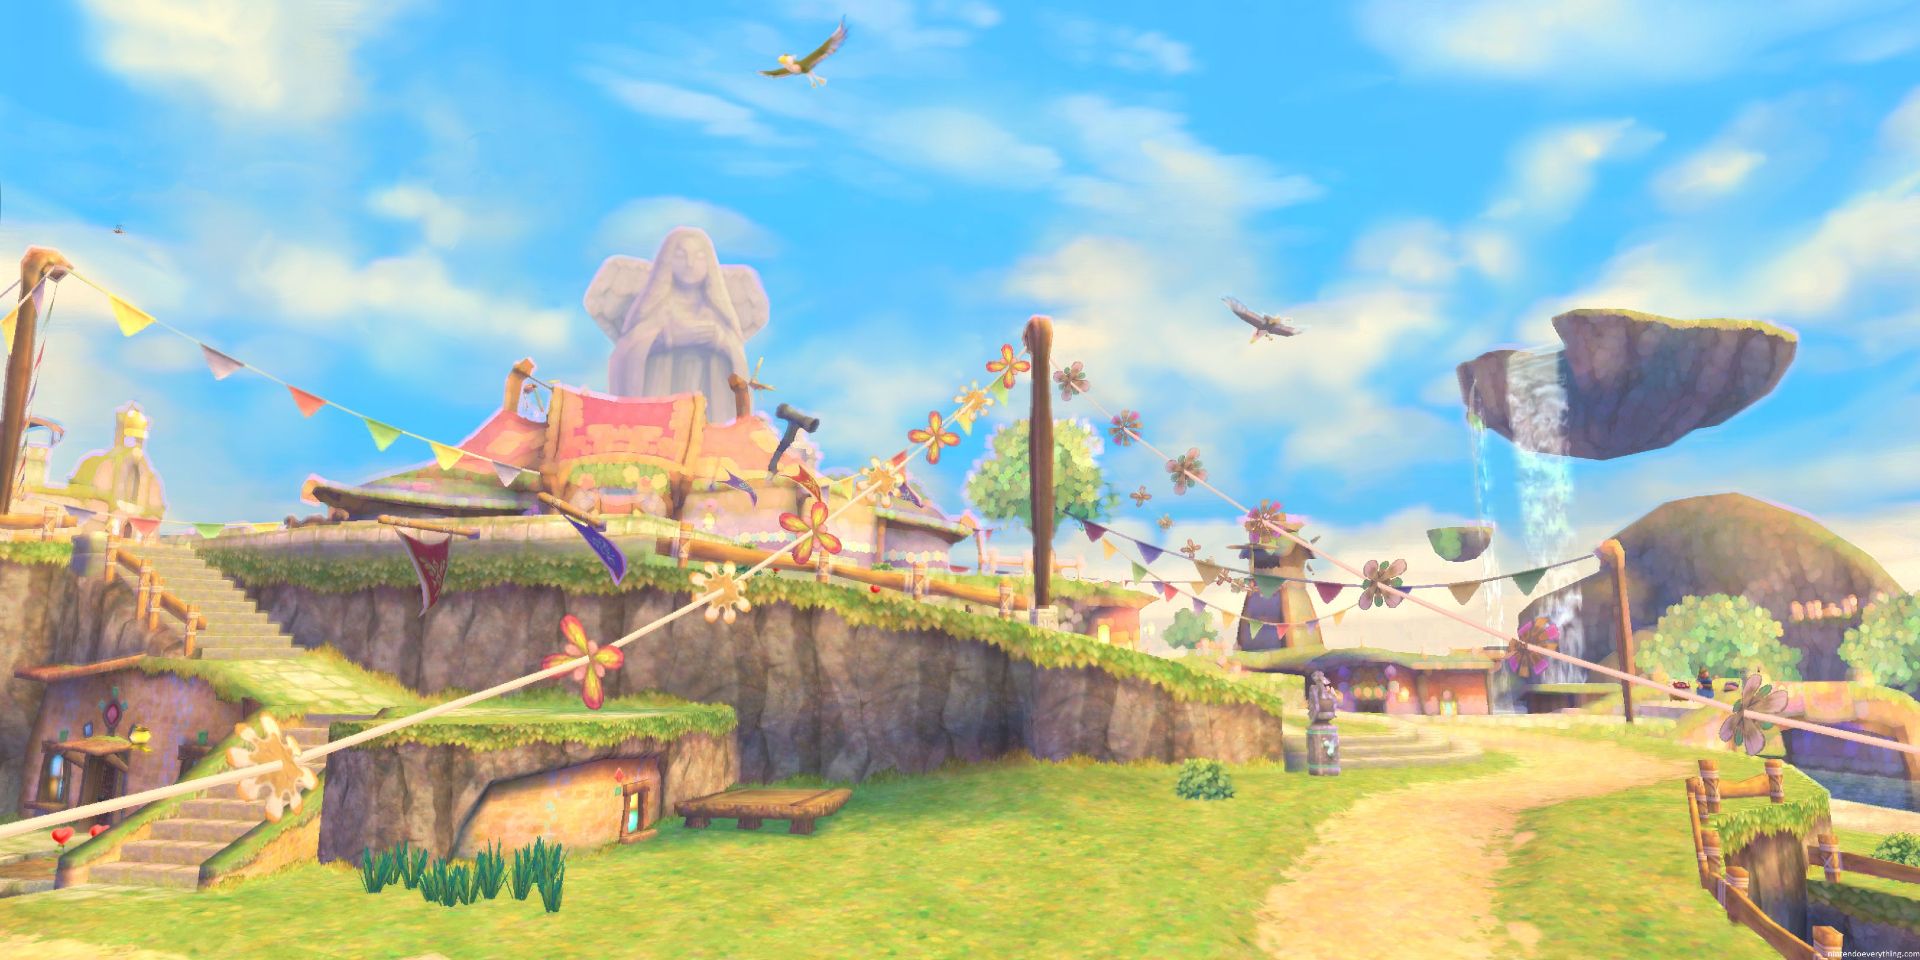 A screenshot of Skyloft from The Legend of Zelda Skyward Sword.